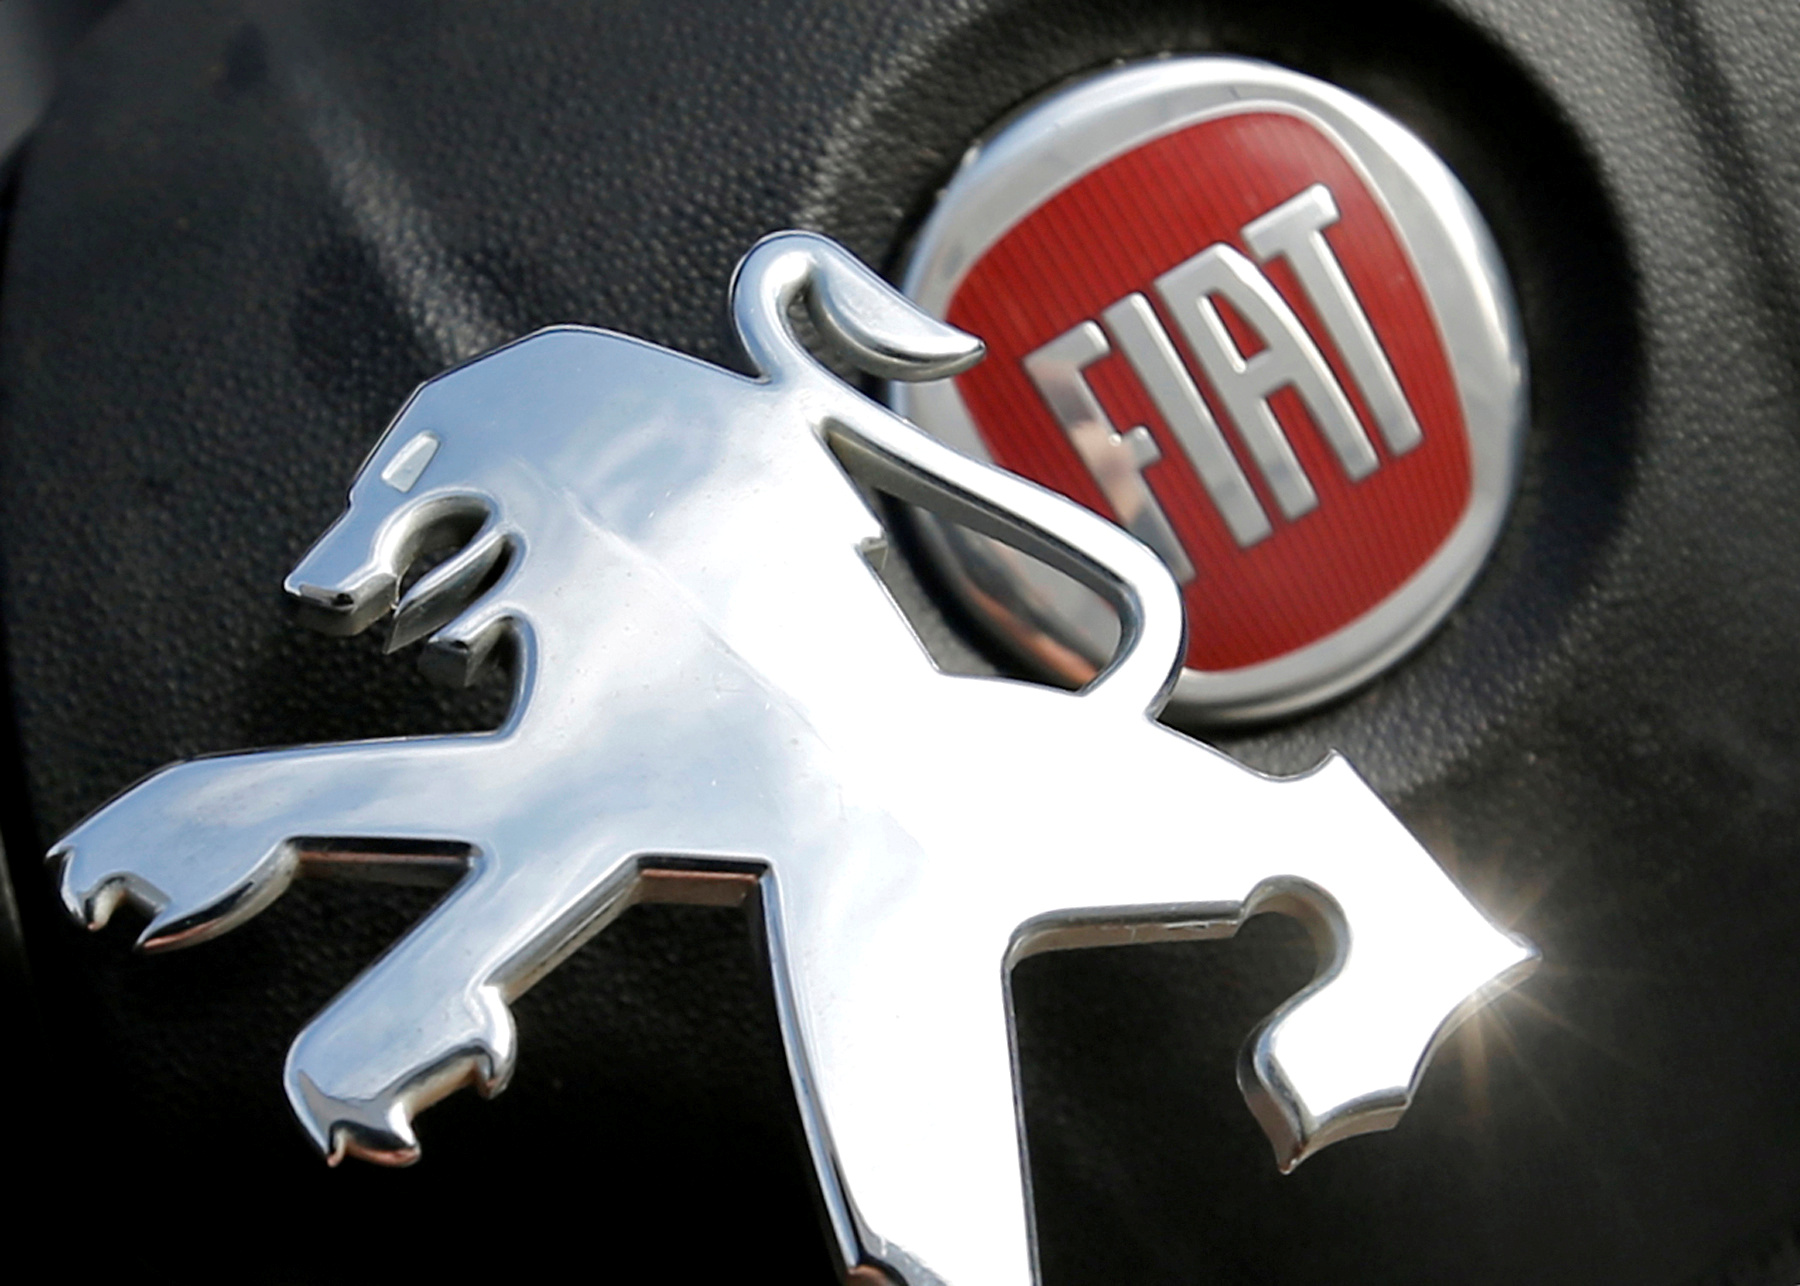 Le projet de fusion entre PSA et Fiat Chrysler est une "bonne nouvelle pour l'industrie française et pour l'industrie européenne" mais la préservation des sites industriels et de l'emploi seront la priorité du gouvernement français, a déclaré jeudi le ministre de l'Economie et des Finances, Bruno Le Maire.